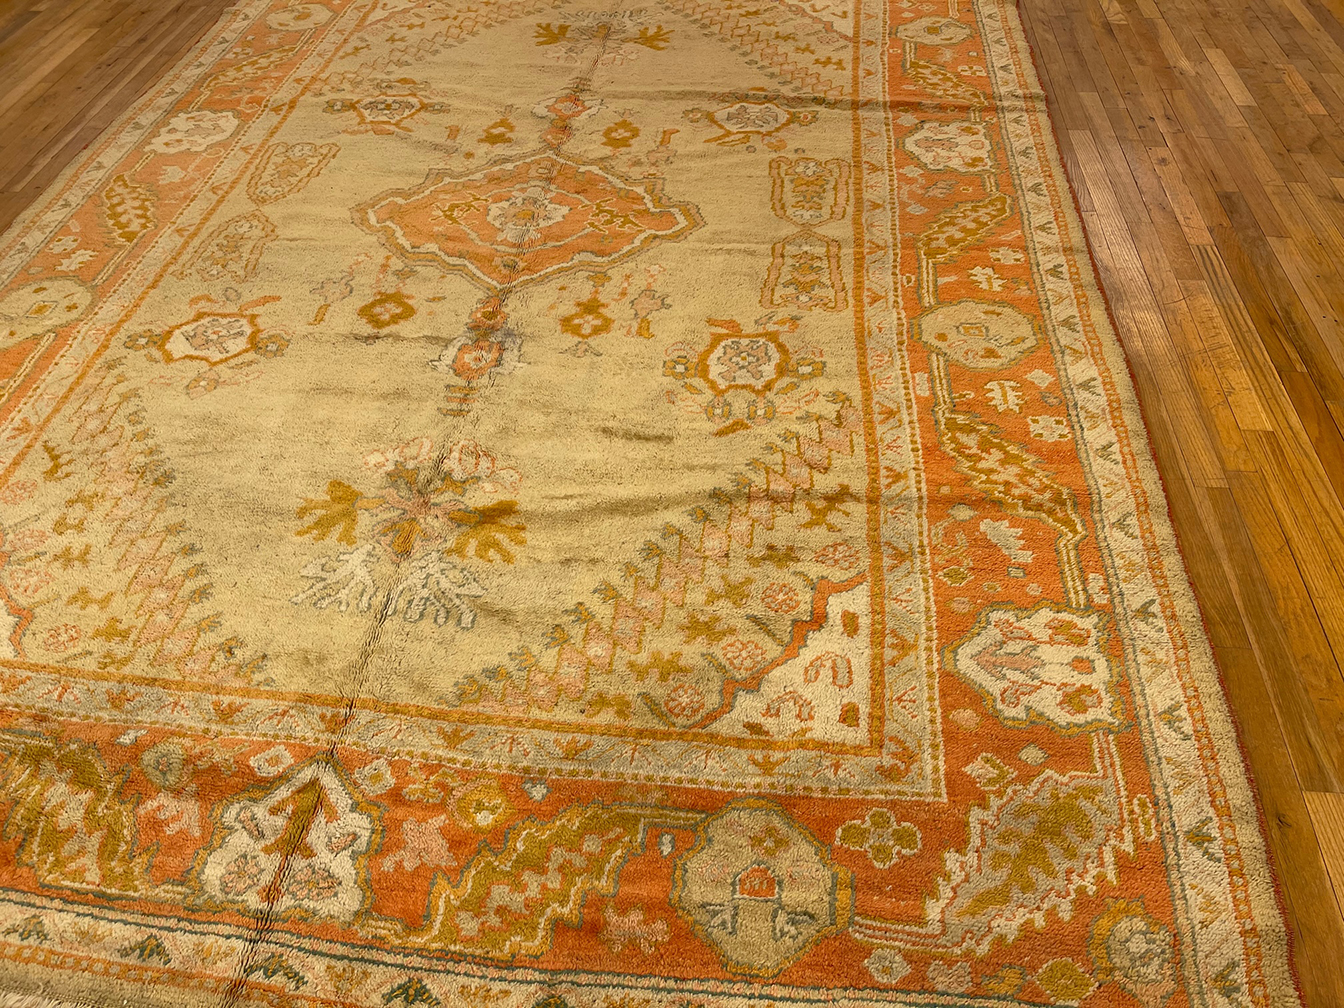 Antique oushak Carpet - # 57220